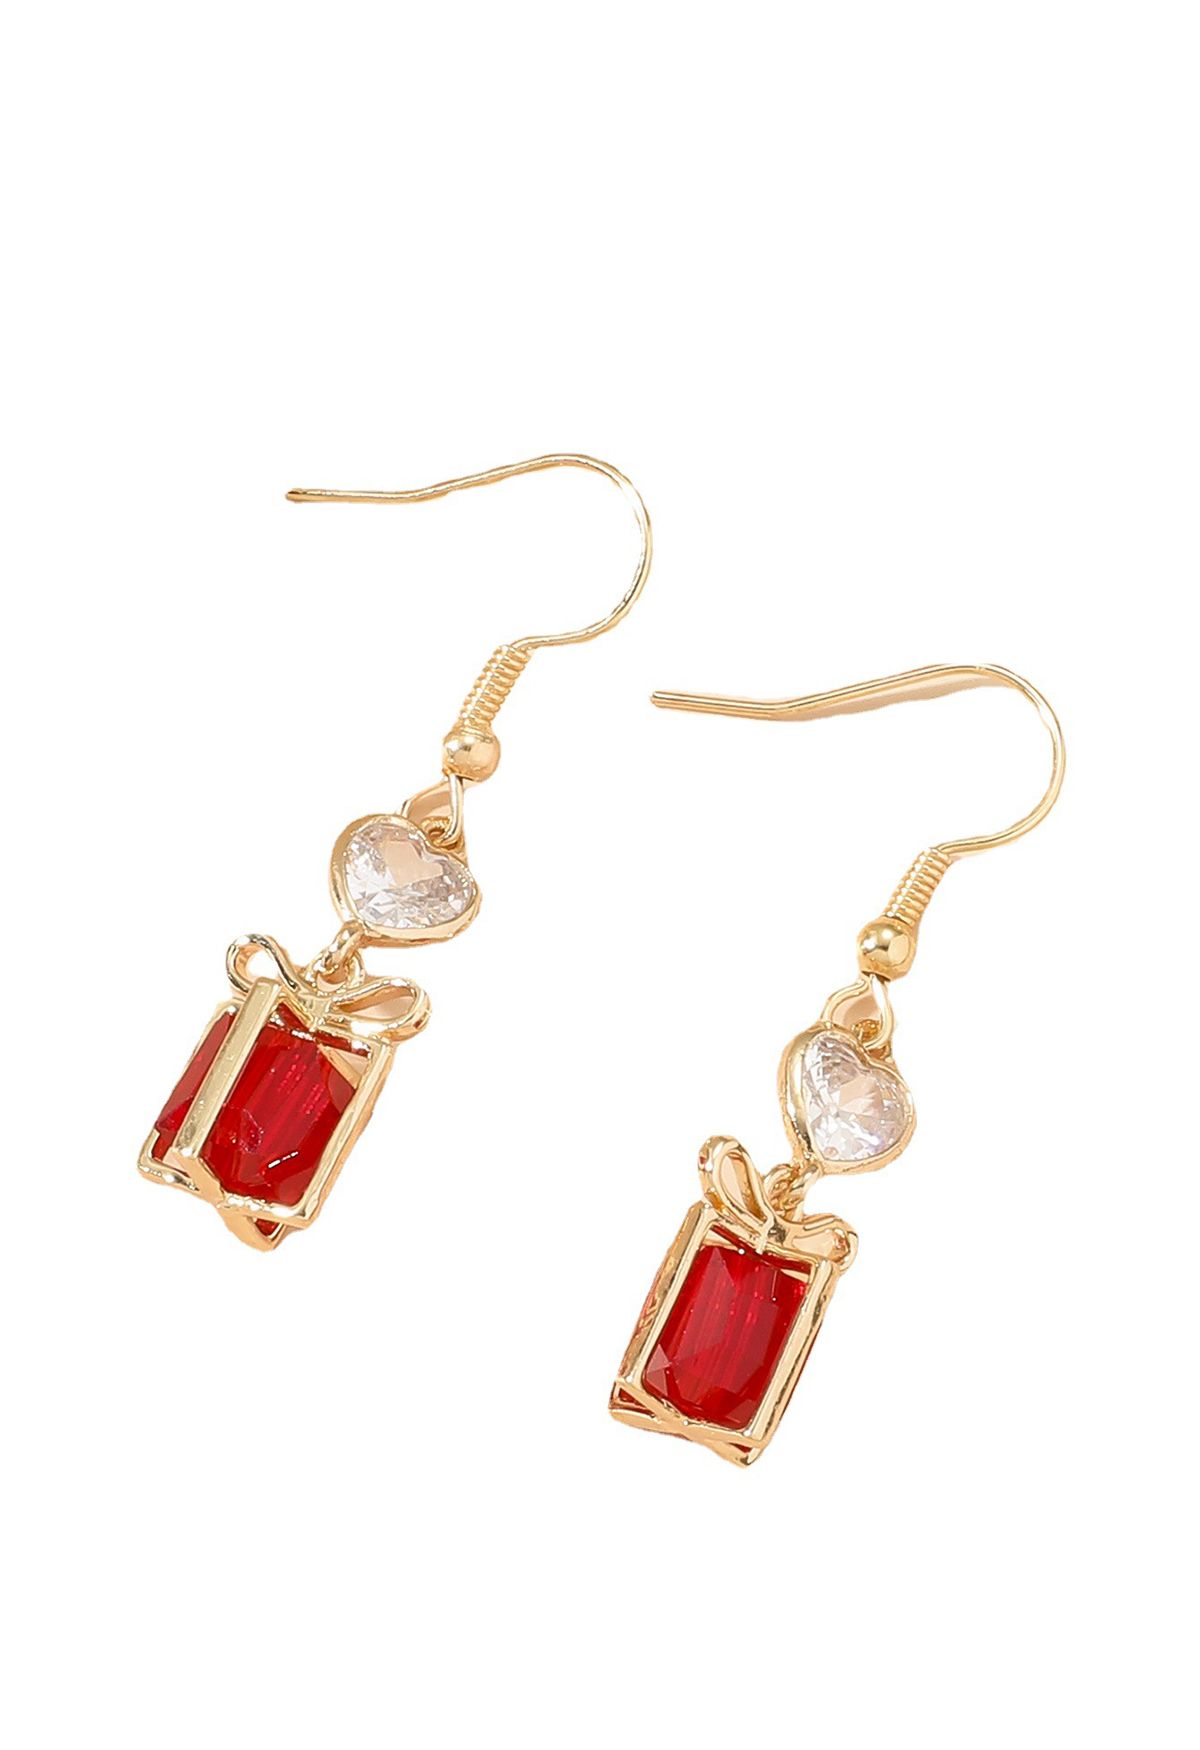 Boucles d'oreilles boîte-cadeau en cristal rouge avec garniture dorée